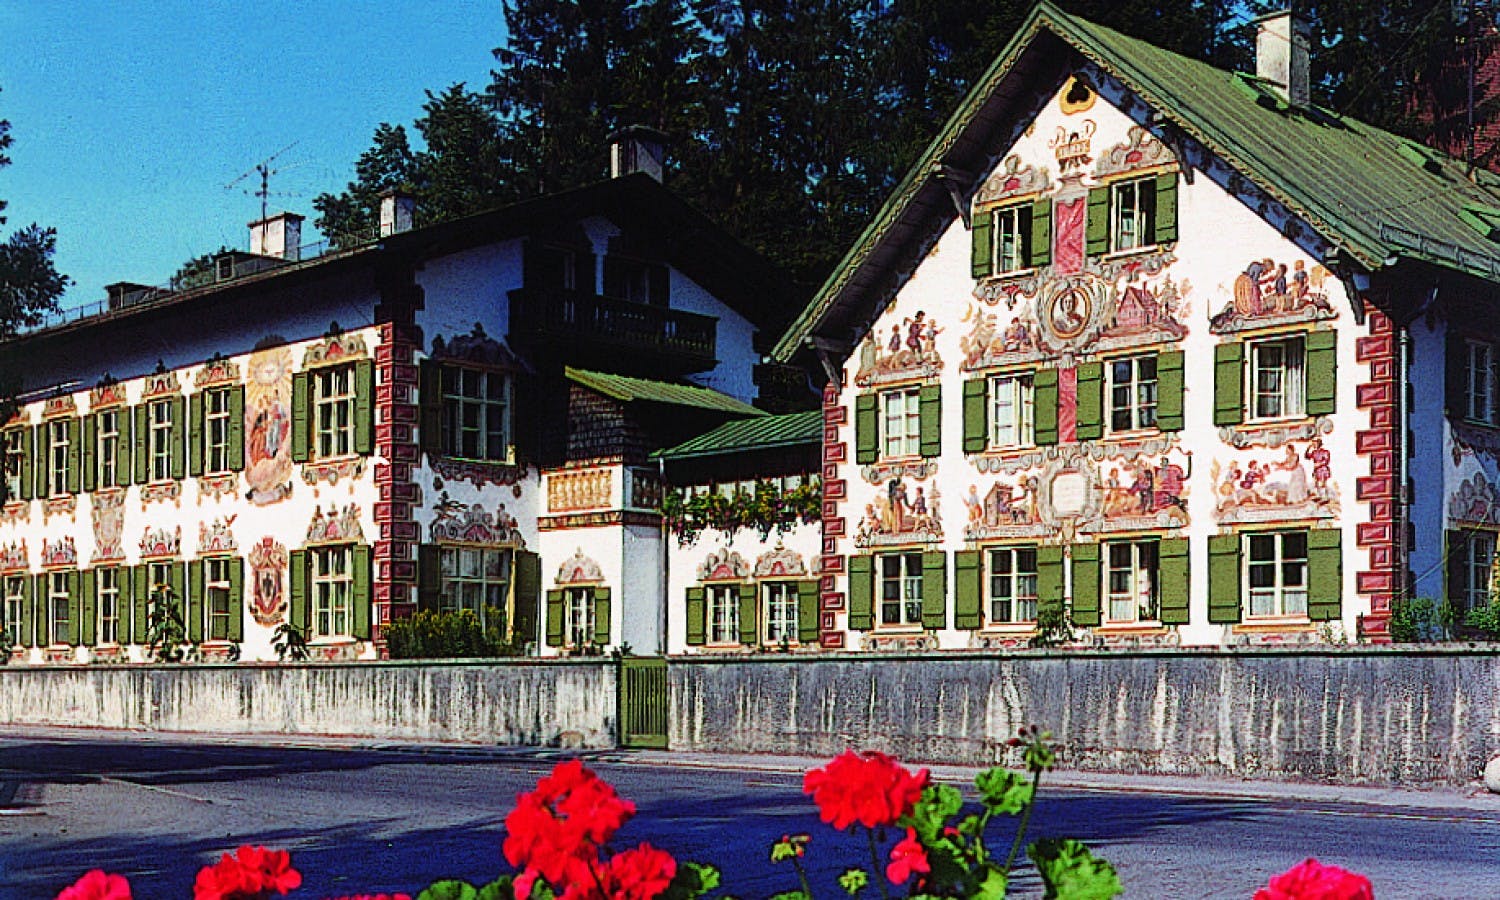 Neuschwanstein, Linderhof Castles and Oberammergau Village: Full Day Trip from Munich